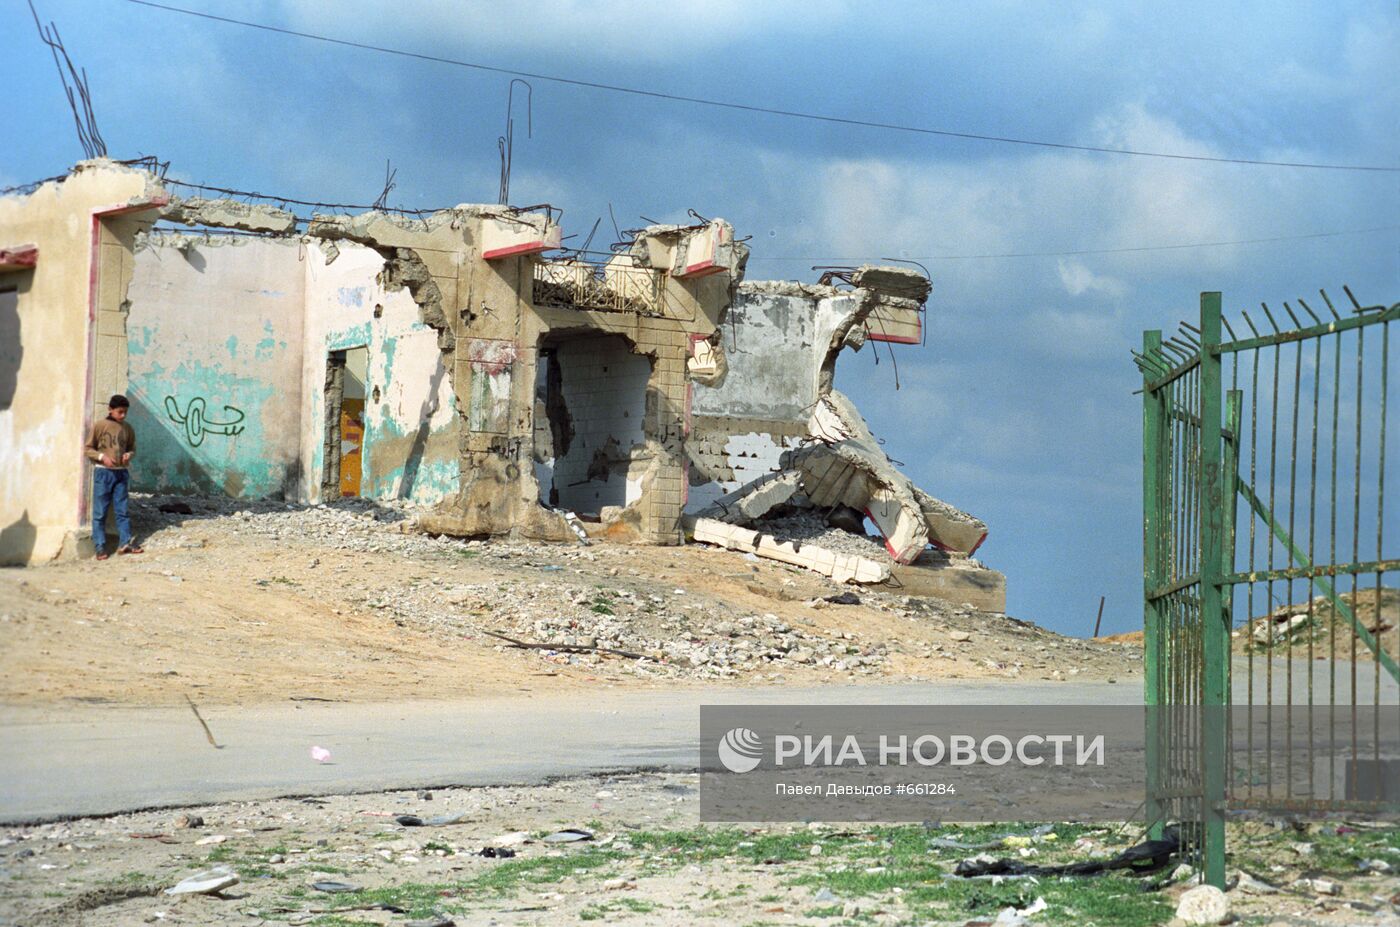 Палестинский дом, взорванный израильтянами